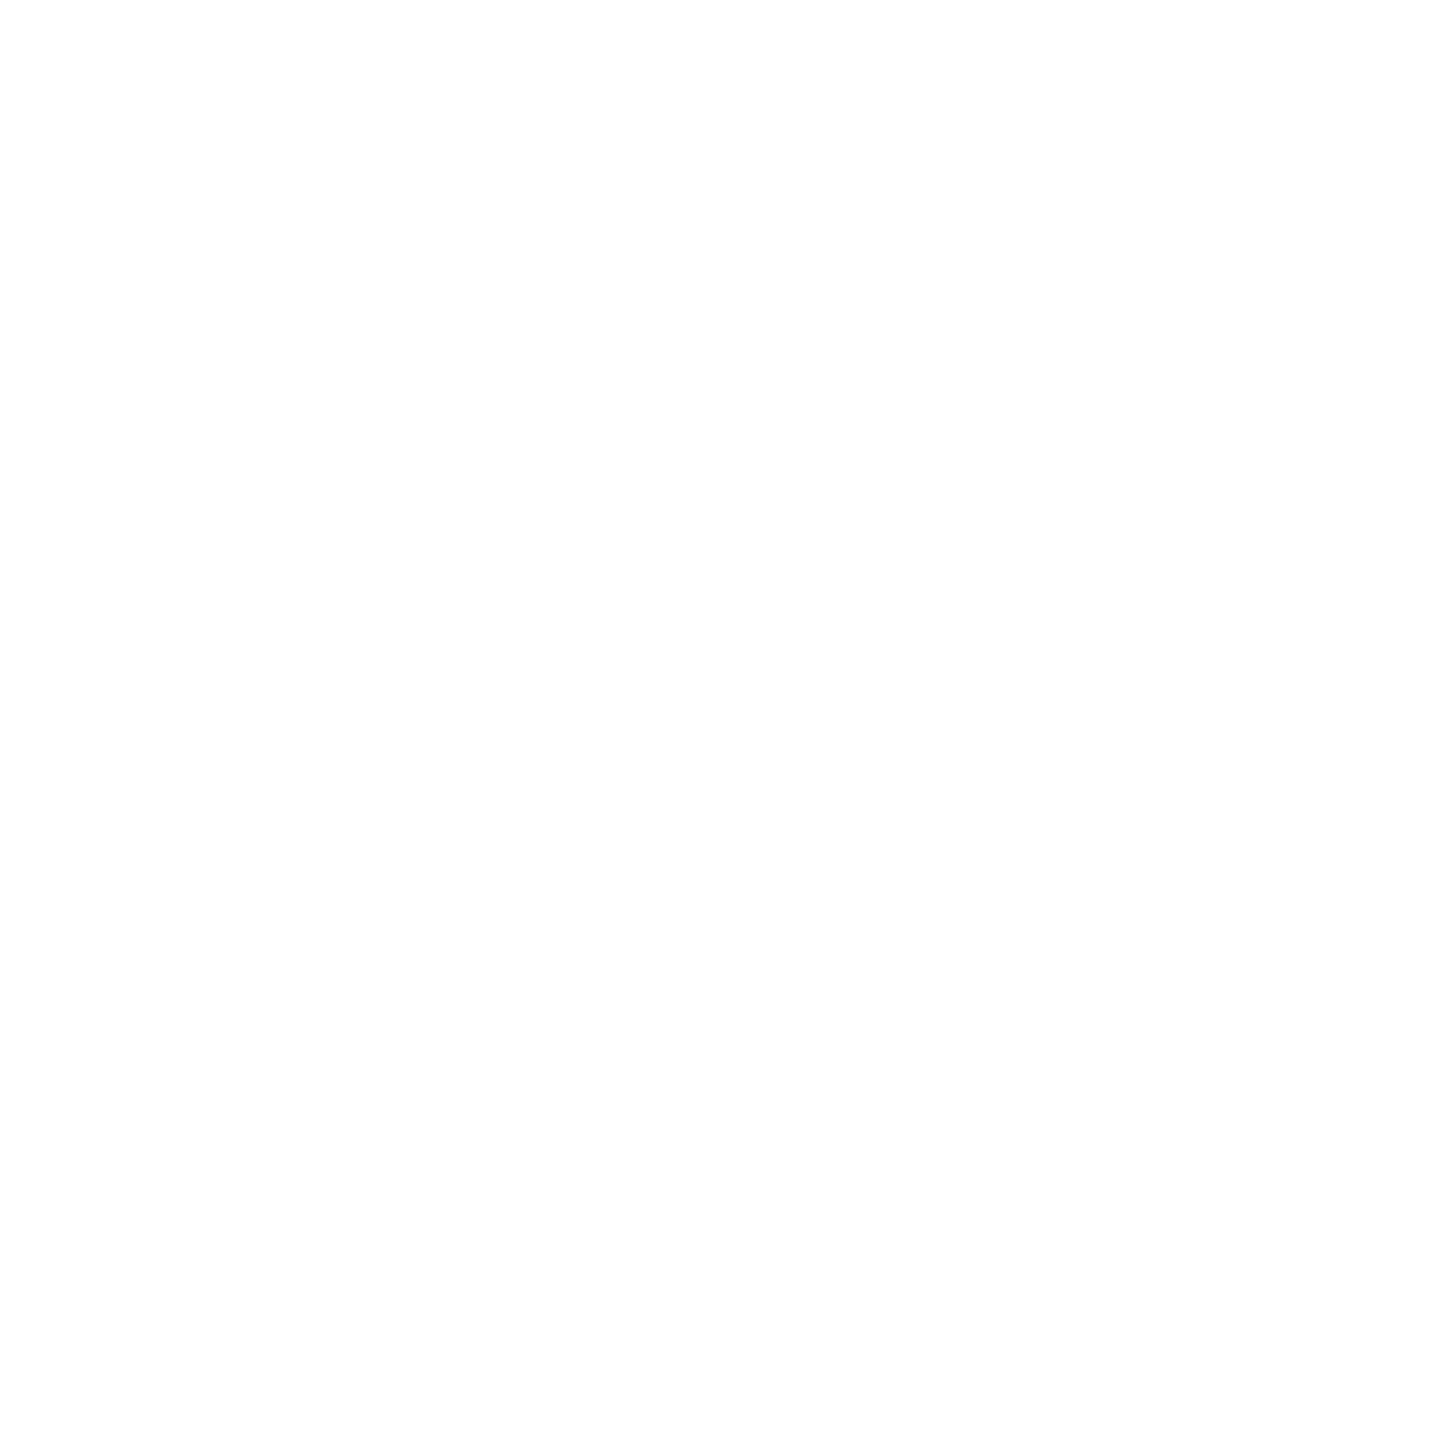 【10セット限定】宇都宮LRTオリジナルグッズ5点セット【3月2日(土) youtube生配信でご紹介】